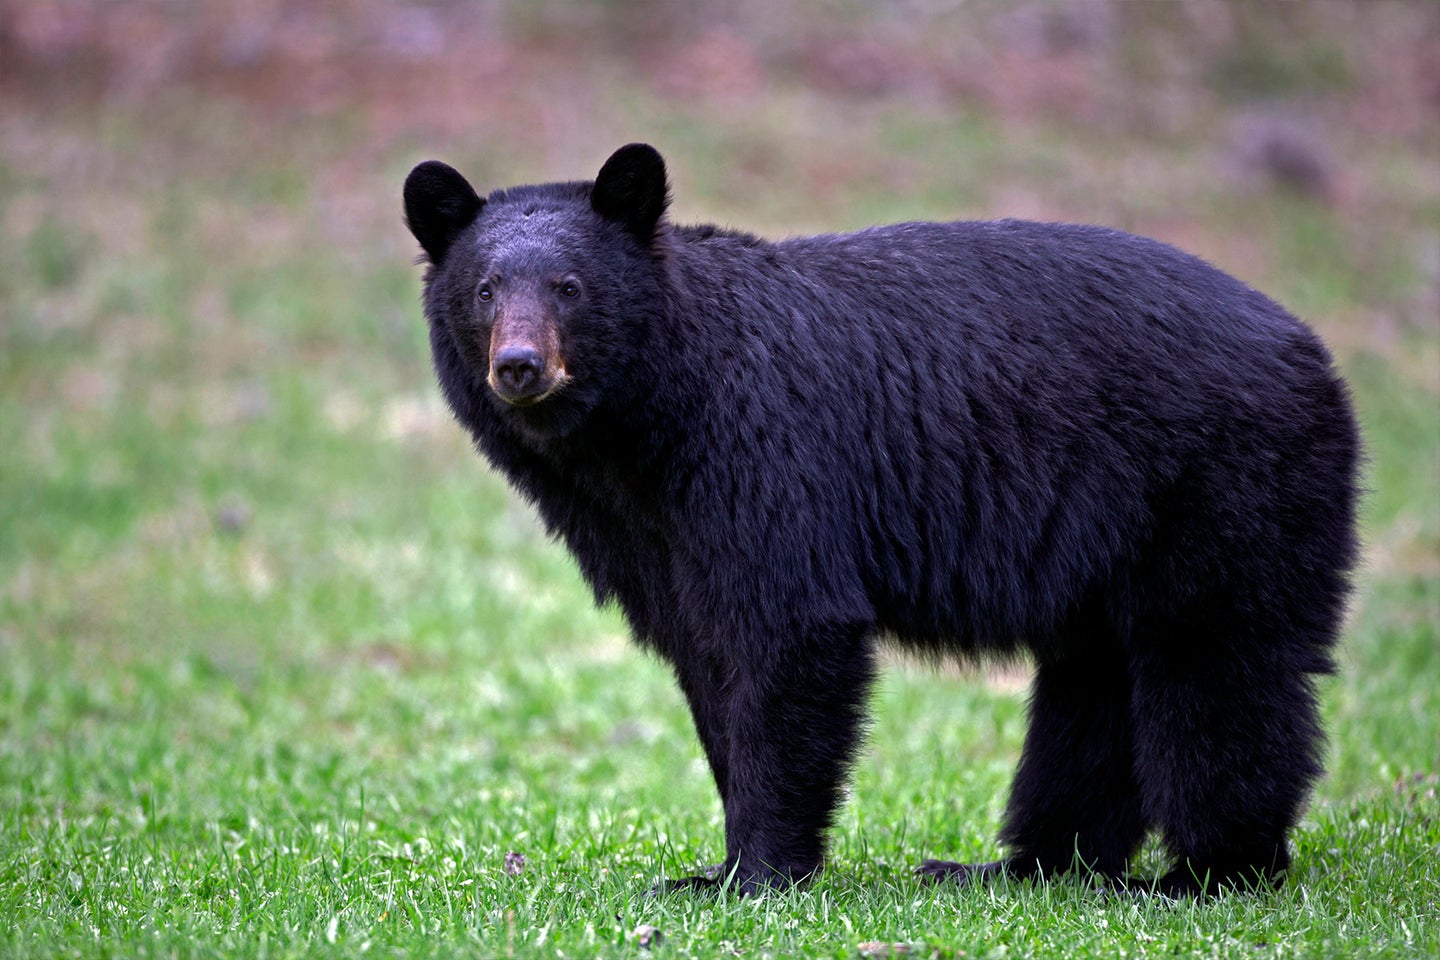 black bear in a lawn